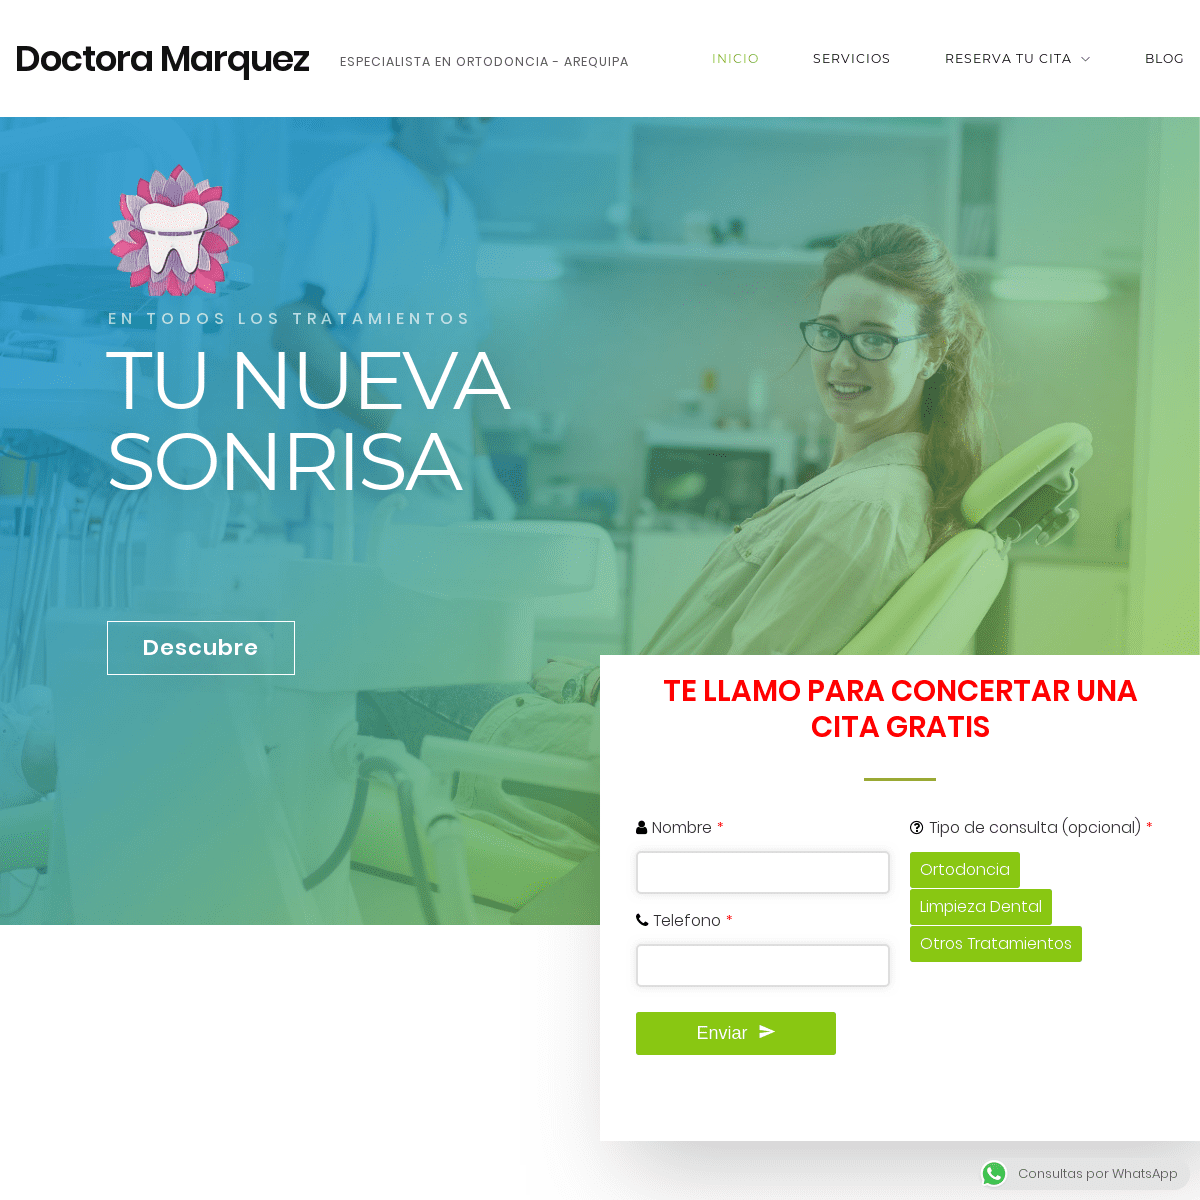 Especialista en Ortodoncia Arequipa I Doctora Márquez